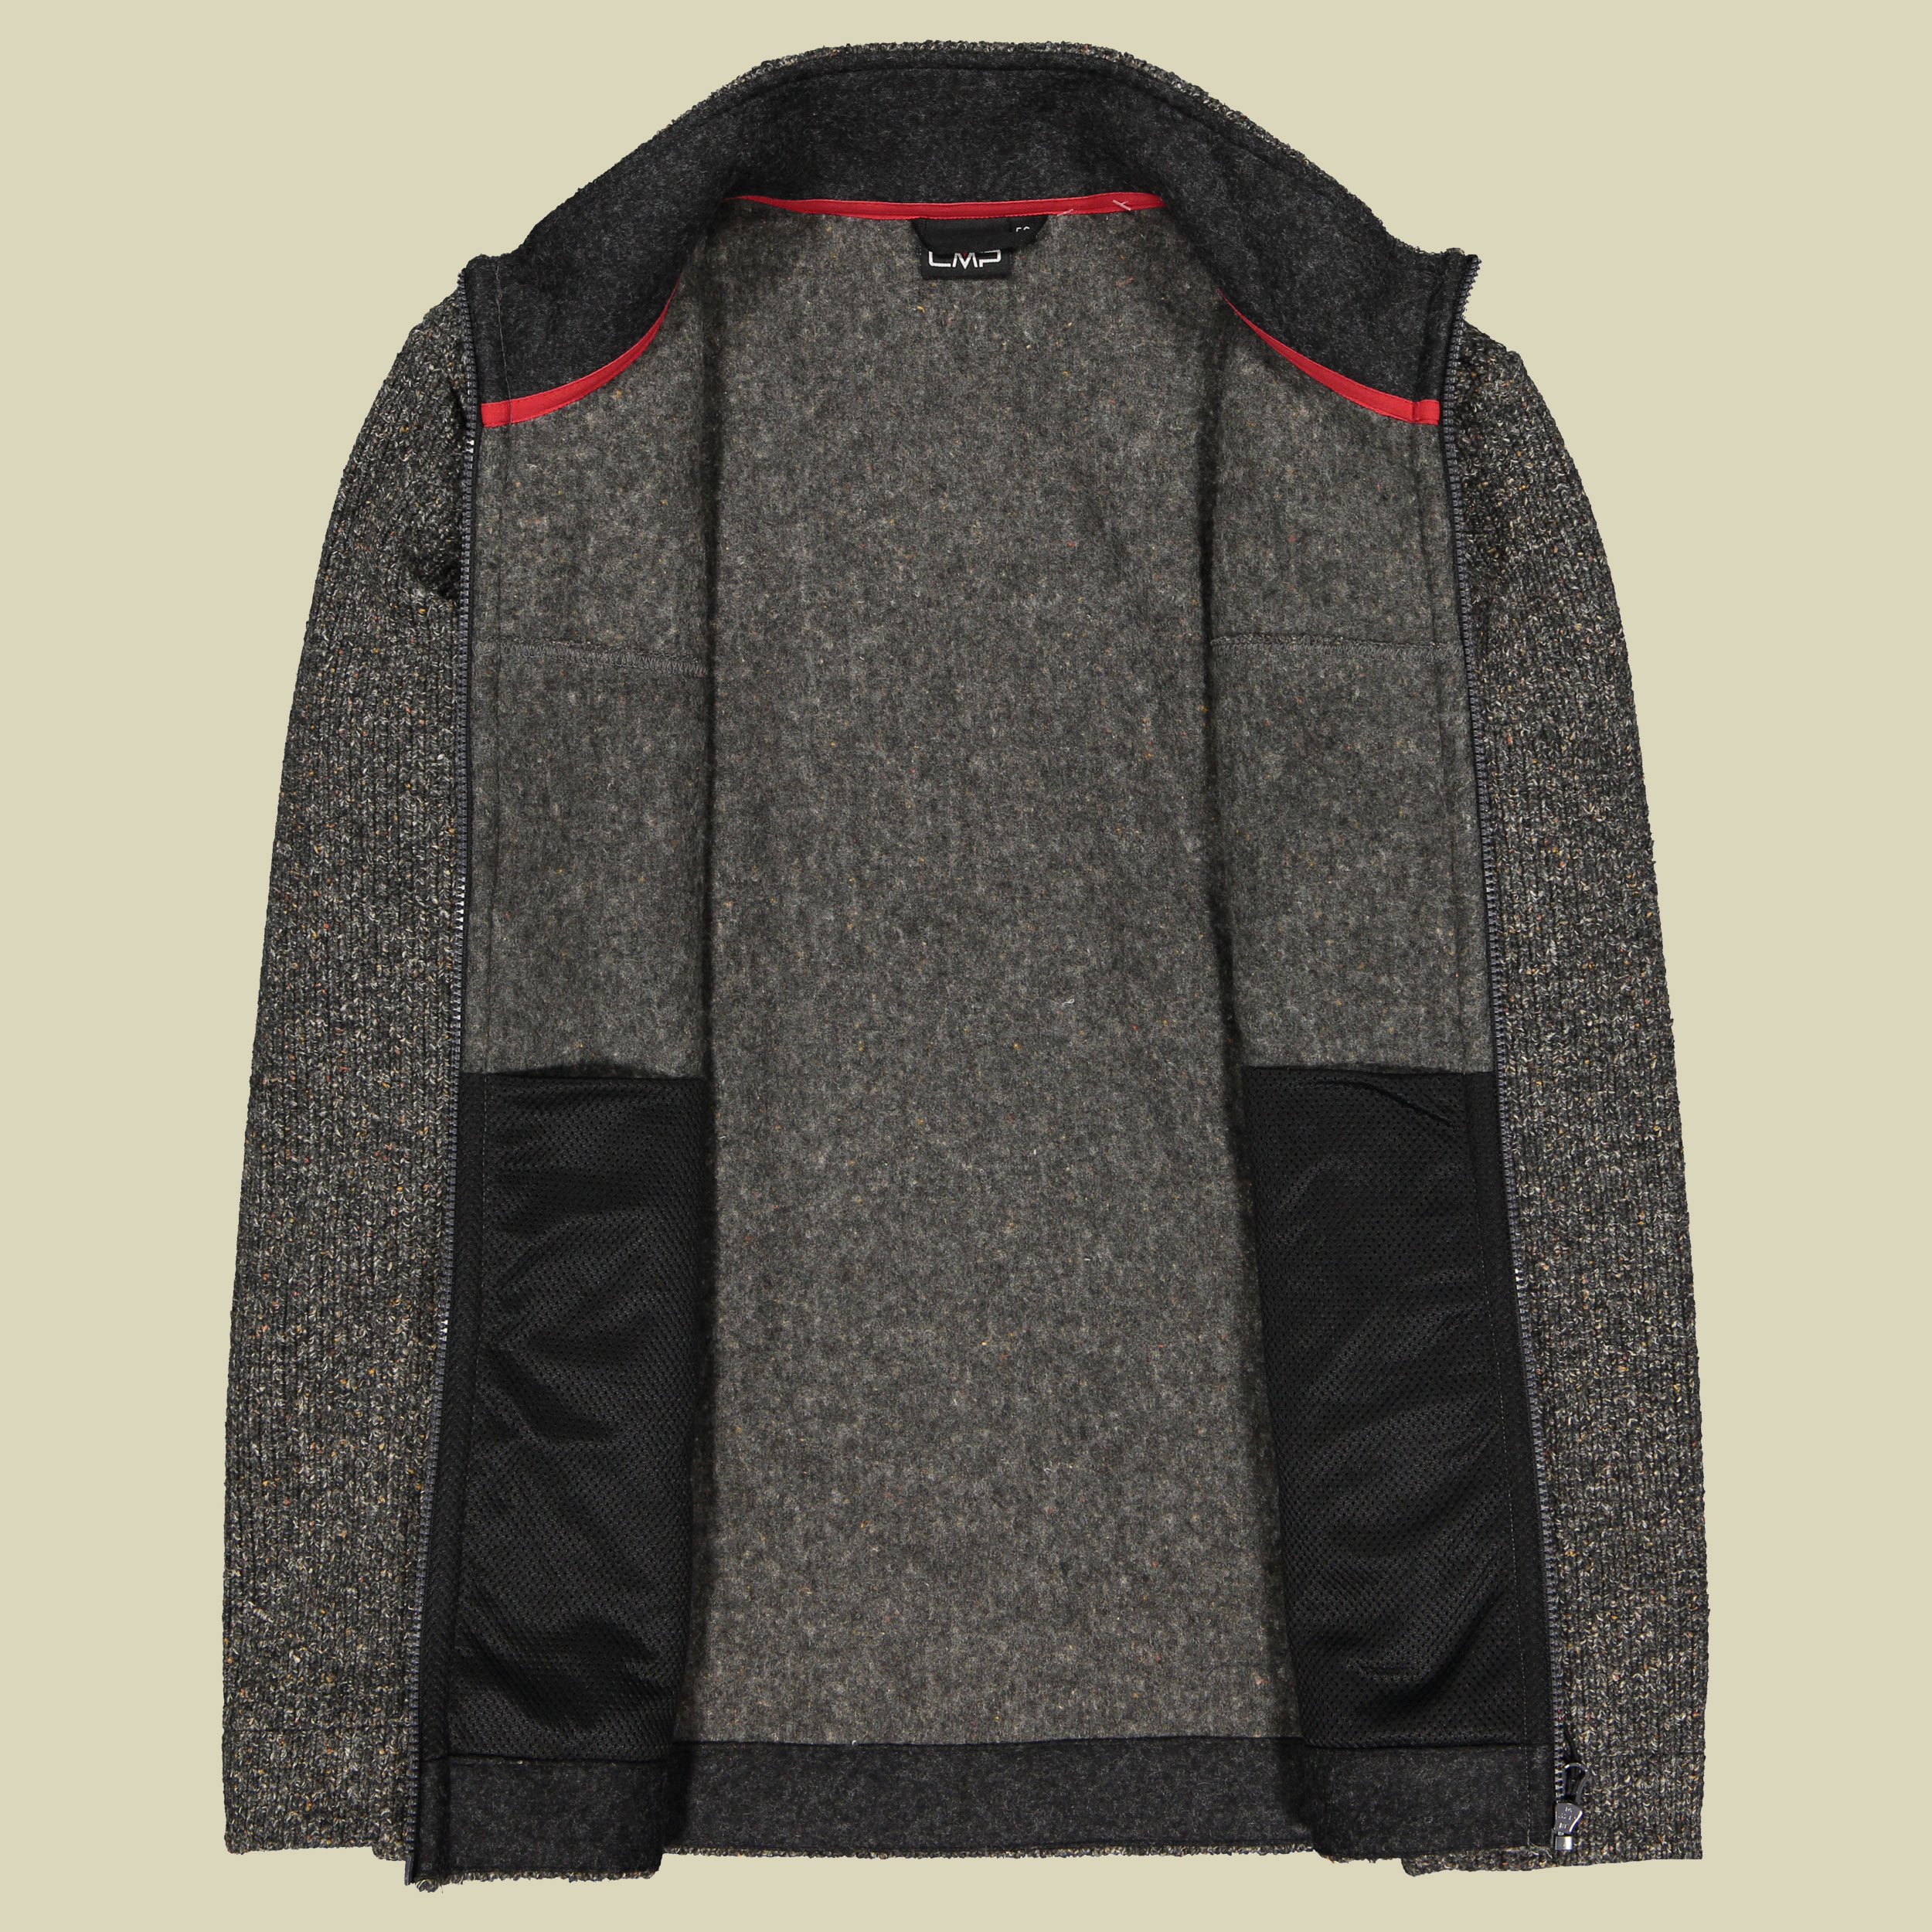 Man Jacket Wooltech 31M3257 Größe 56 Farbe carbone melange U905